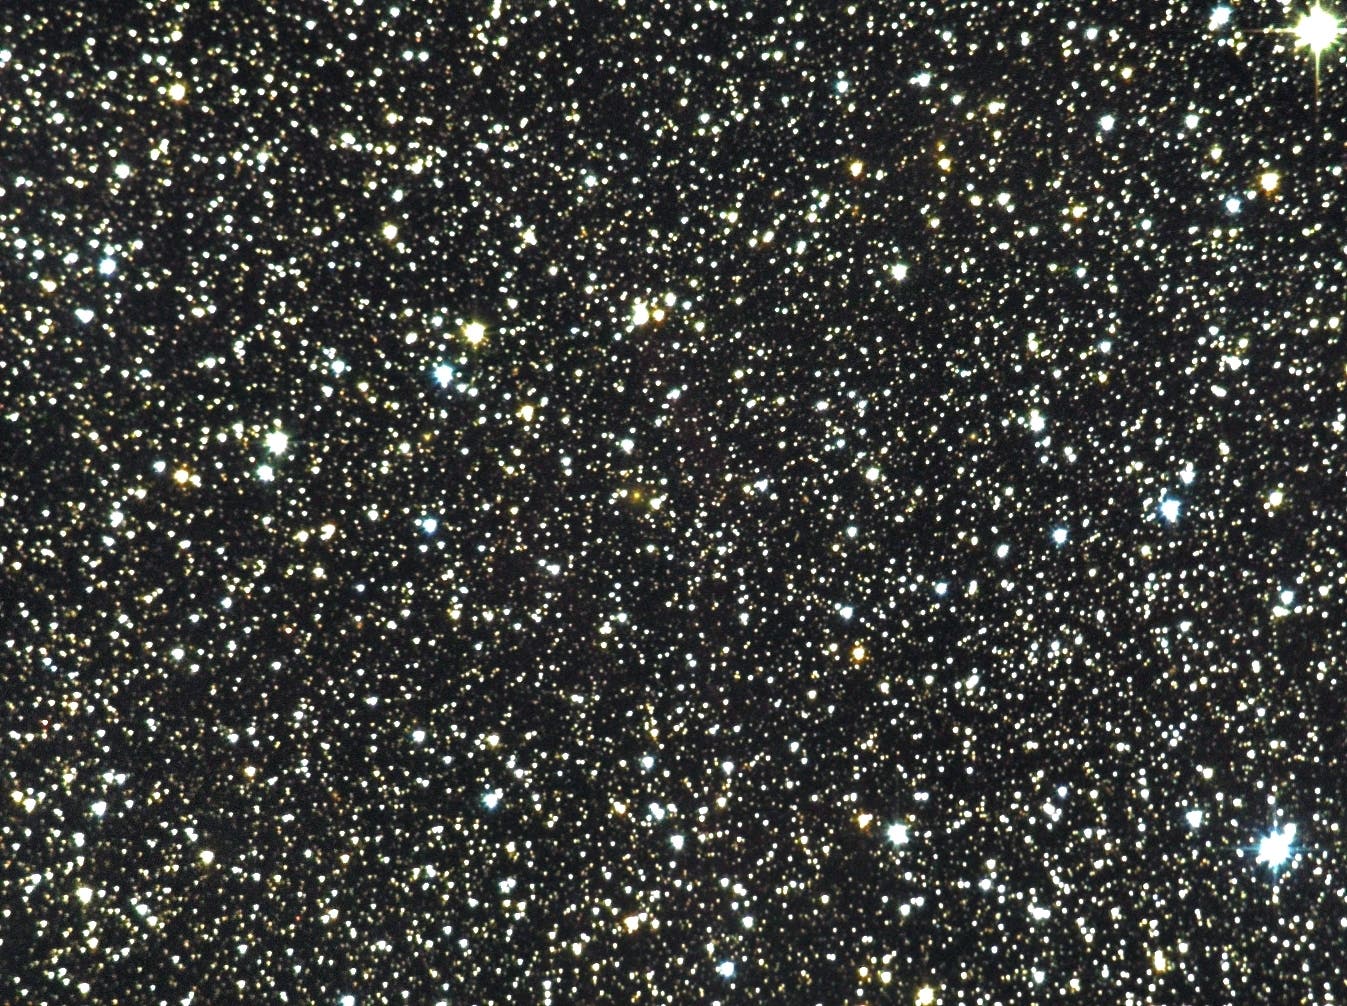 Radiogalaxie Cygnus A (3C 405), (2)